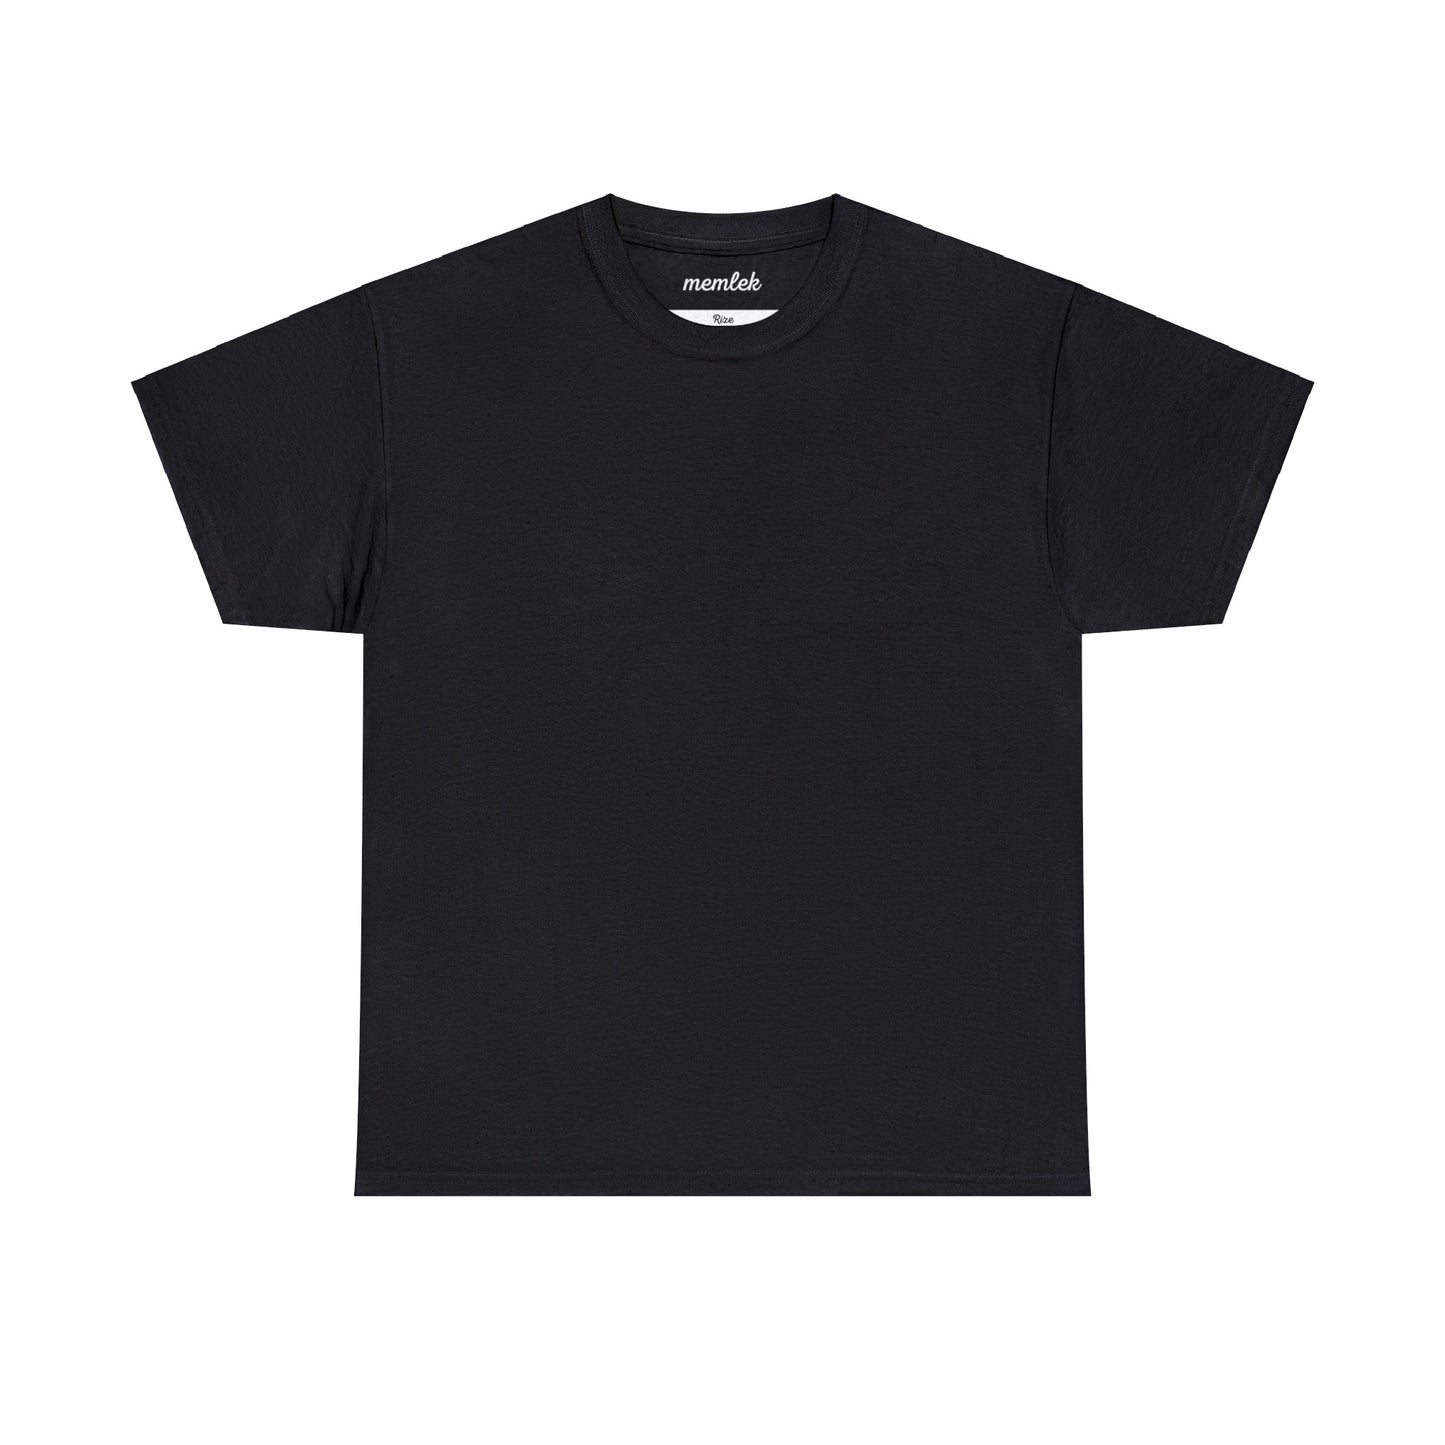 Kurt - 53 Rize - T-Shirt - Back Print - Black/White